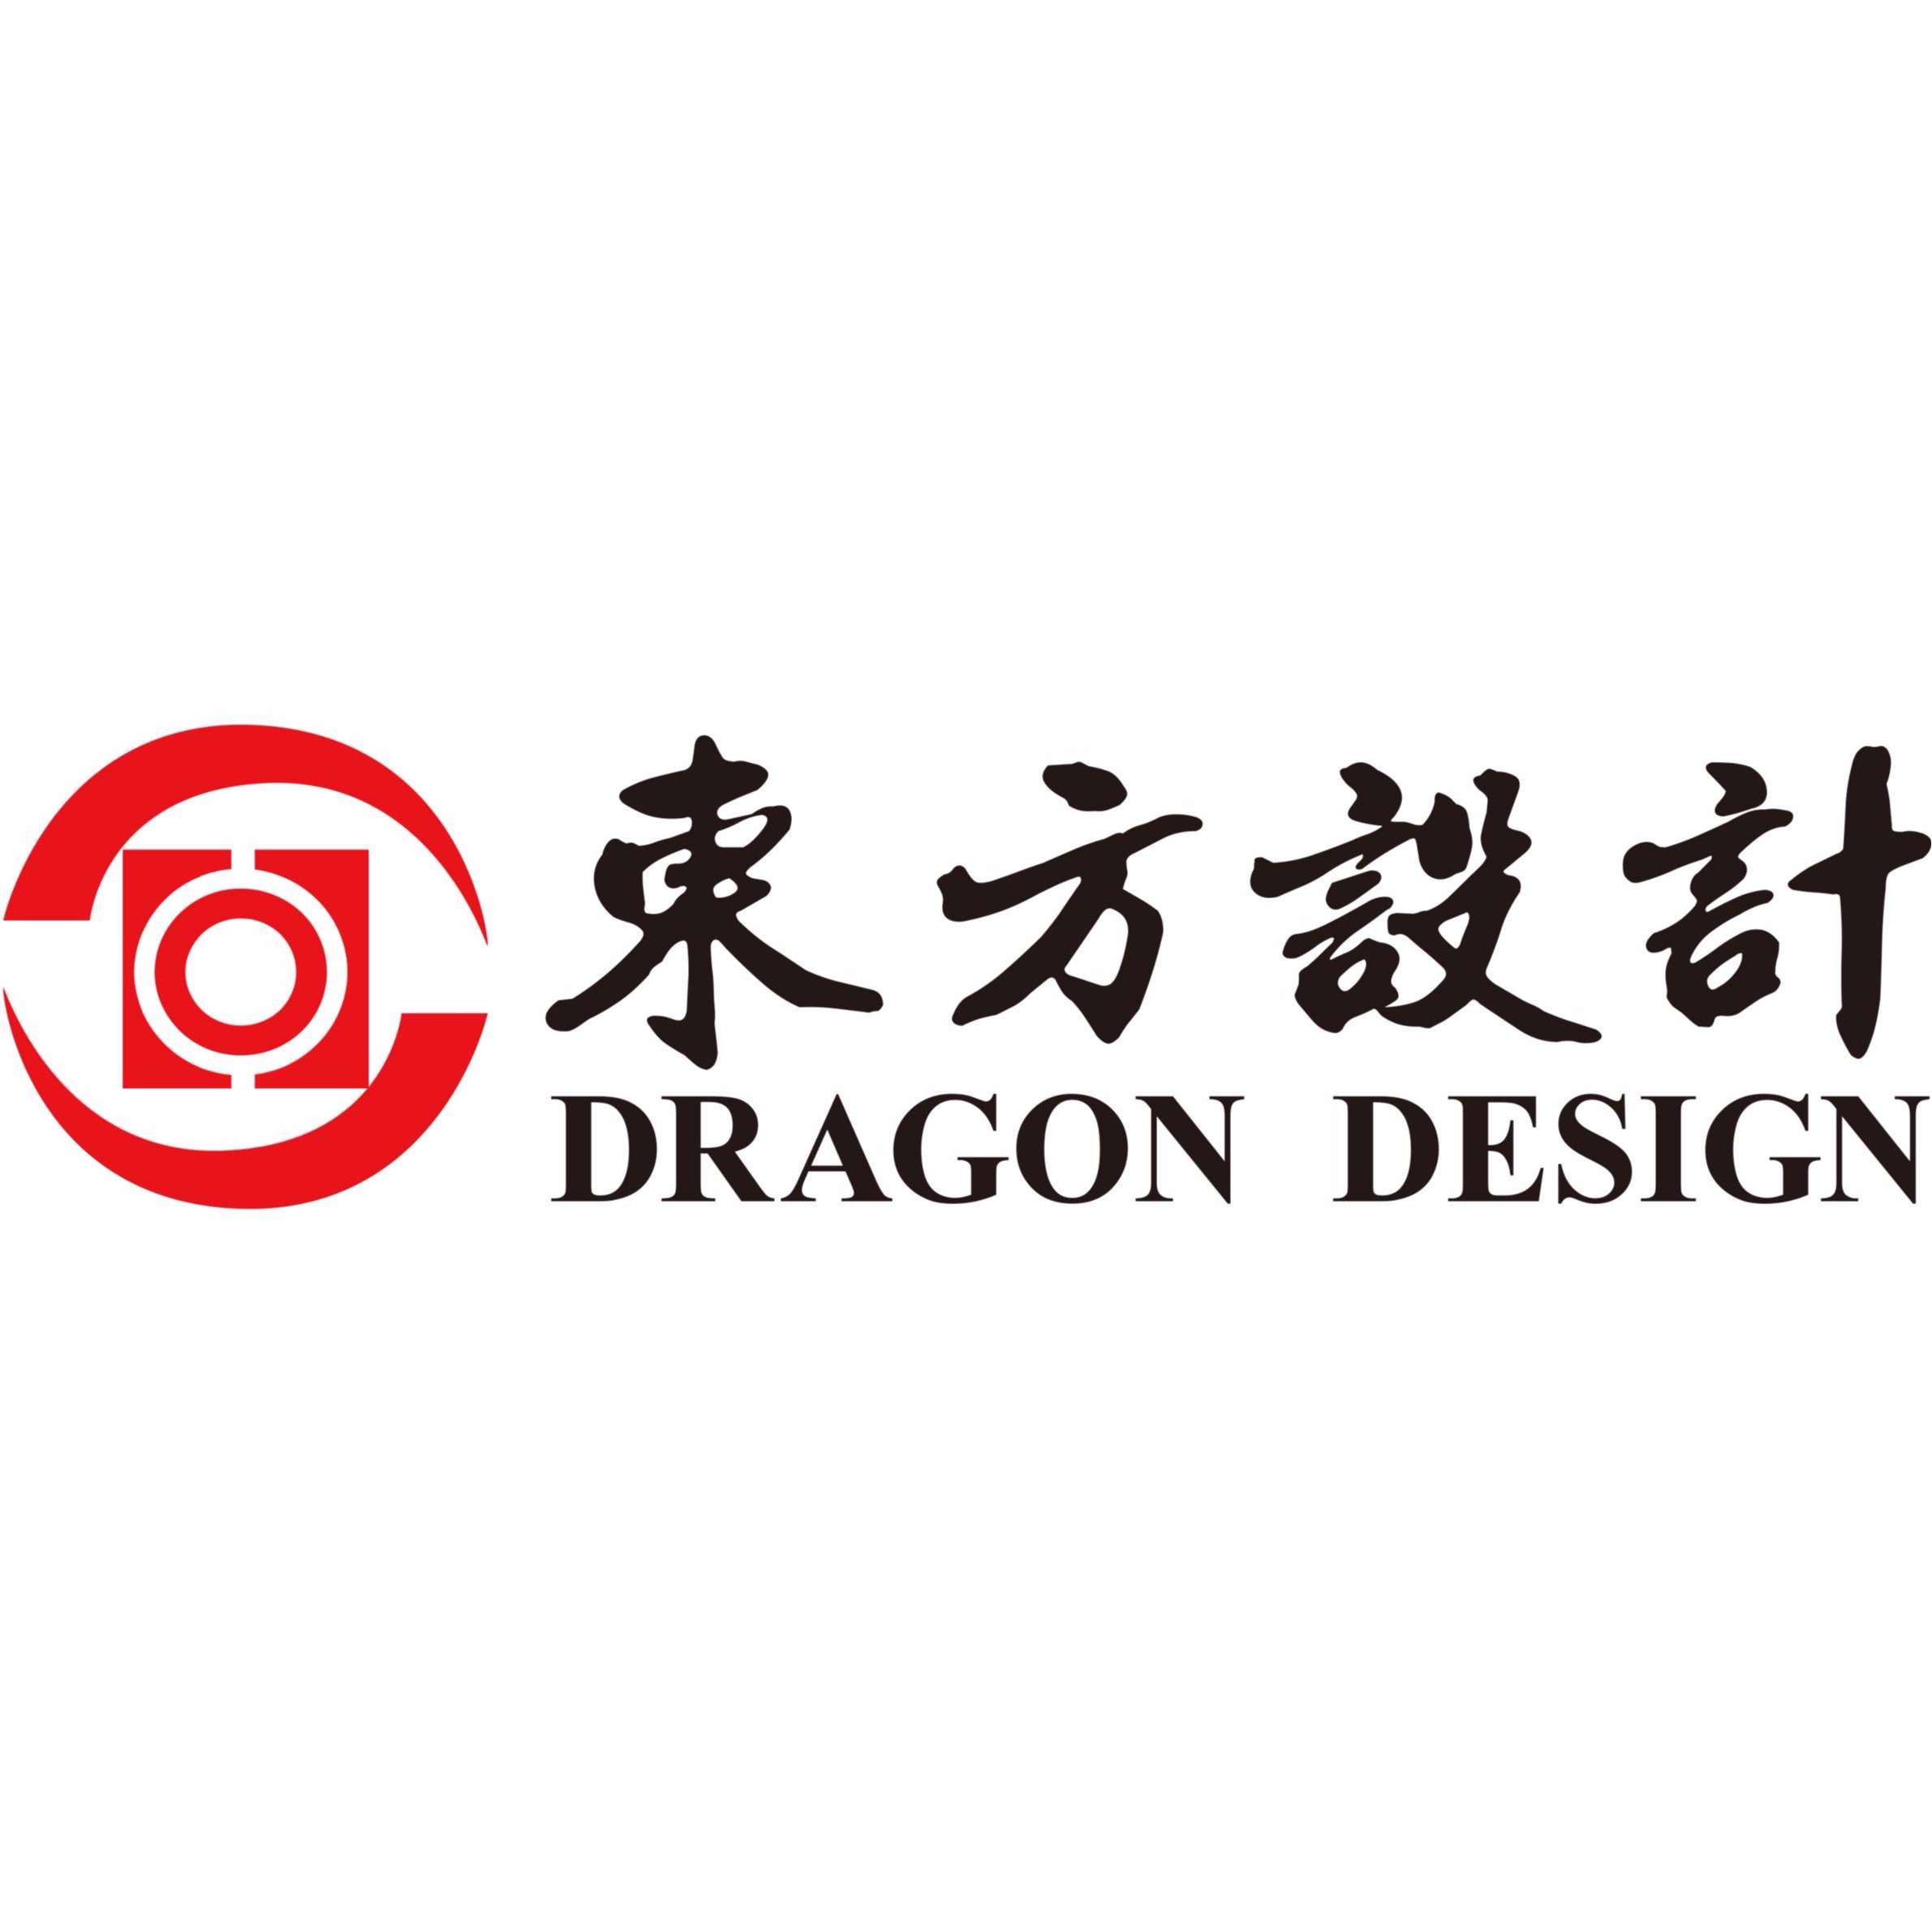 Dragon Design logo